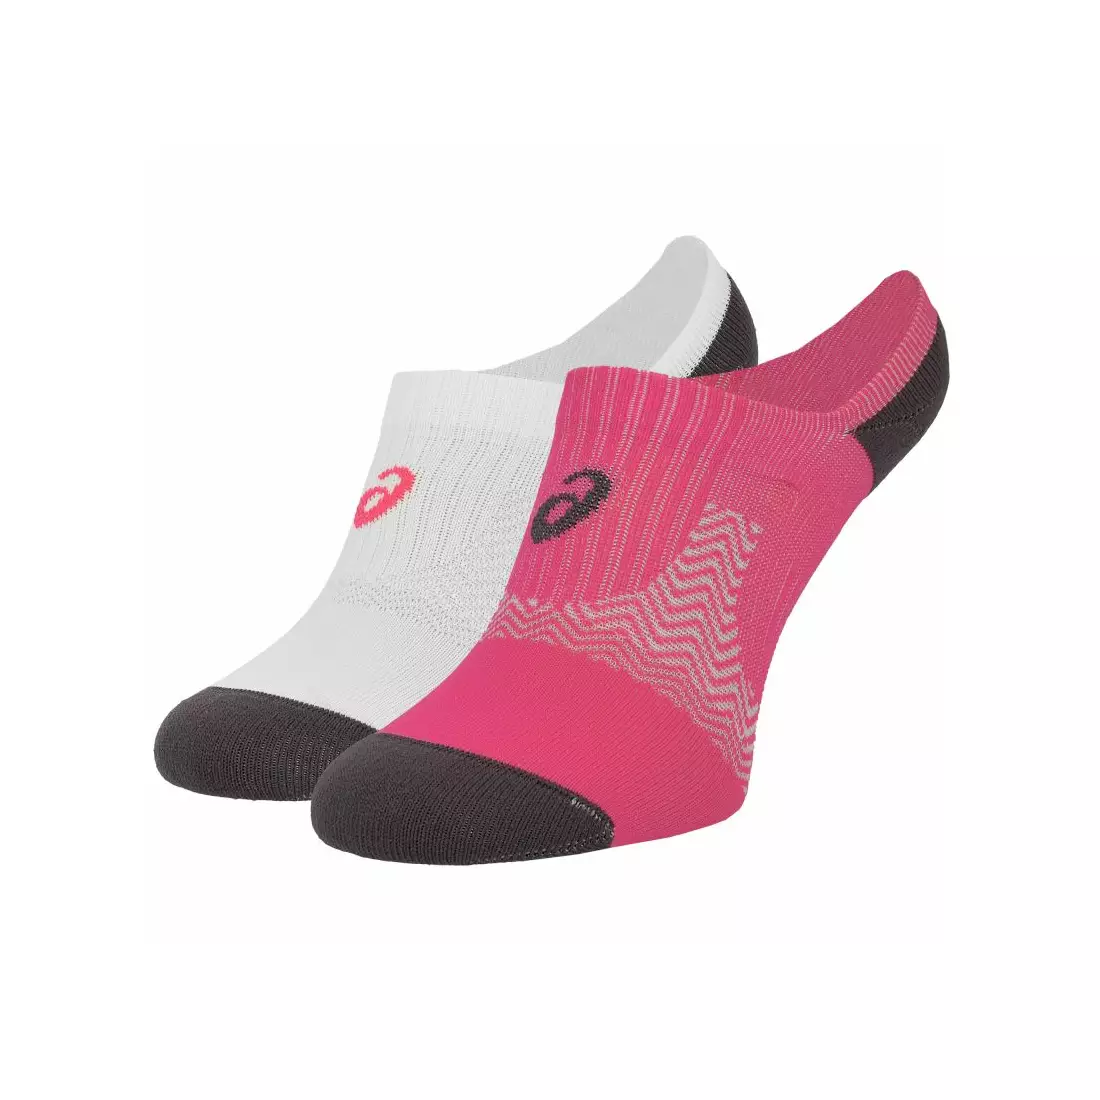 ASICS women's sports socks 2-pack 130889-6016